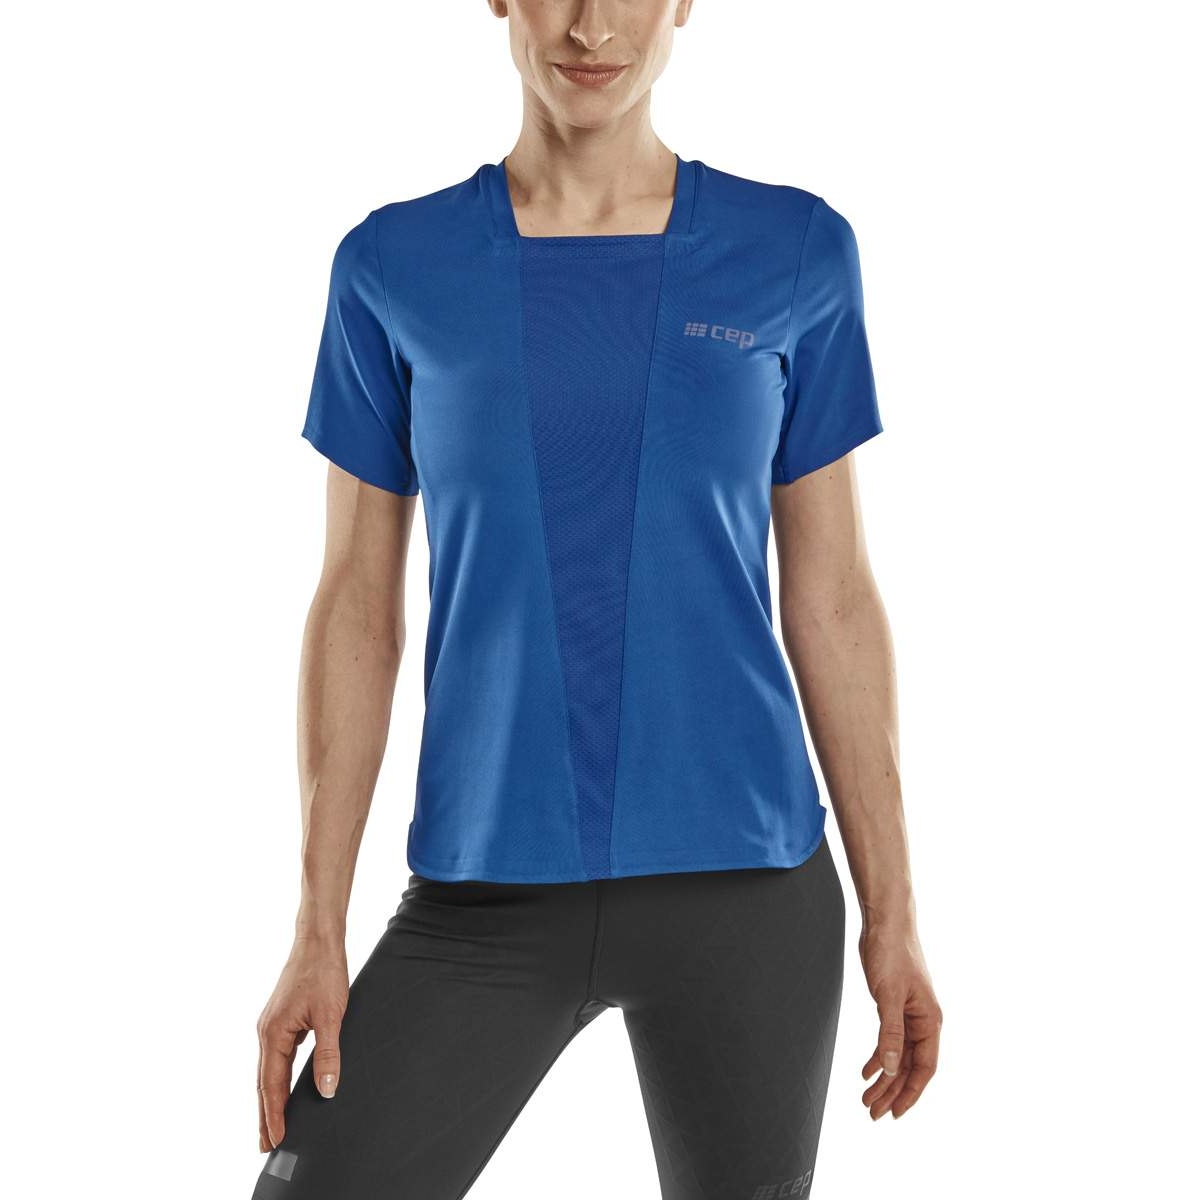 Produktbild von CEP The Run T-Shirt Damen - blau